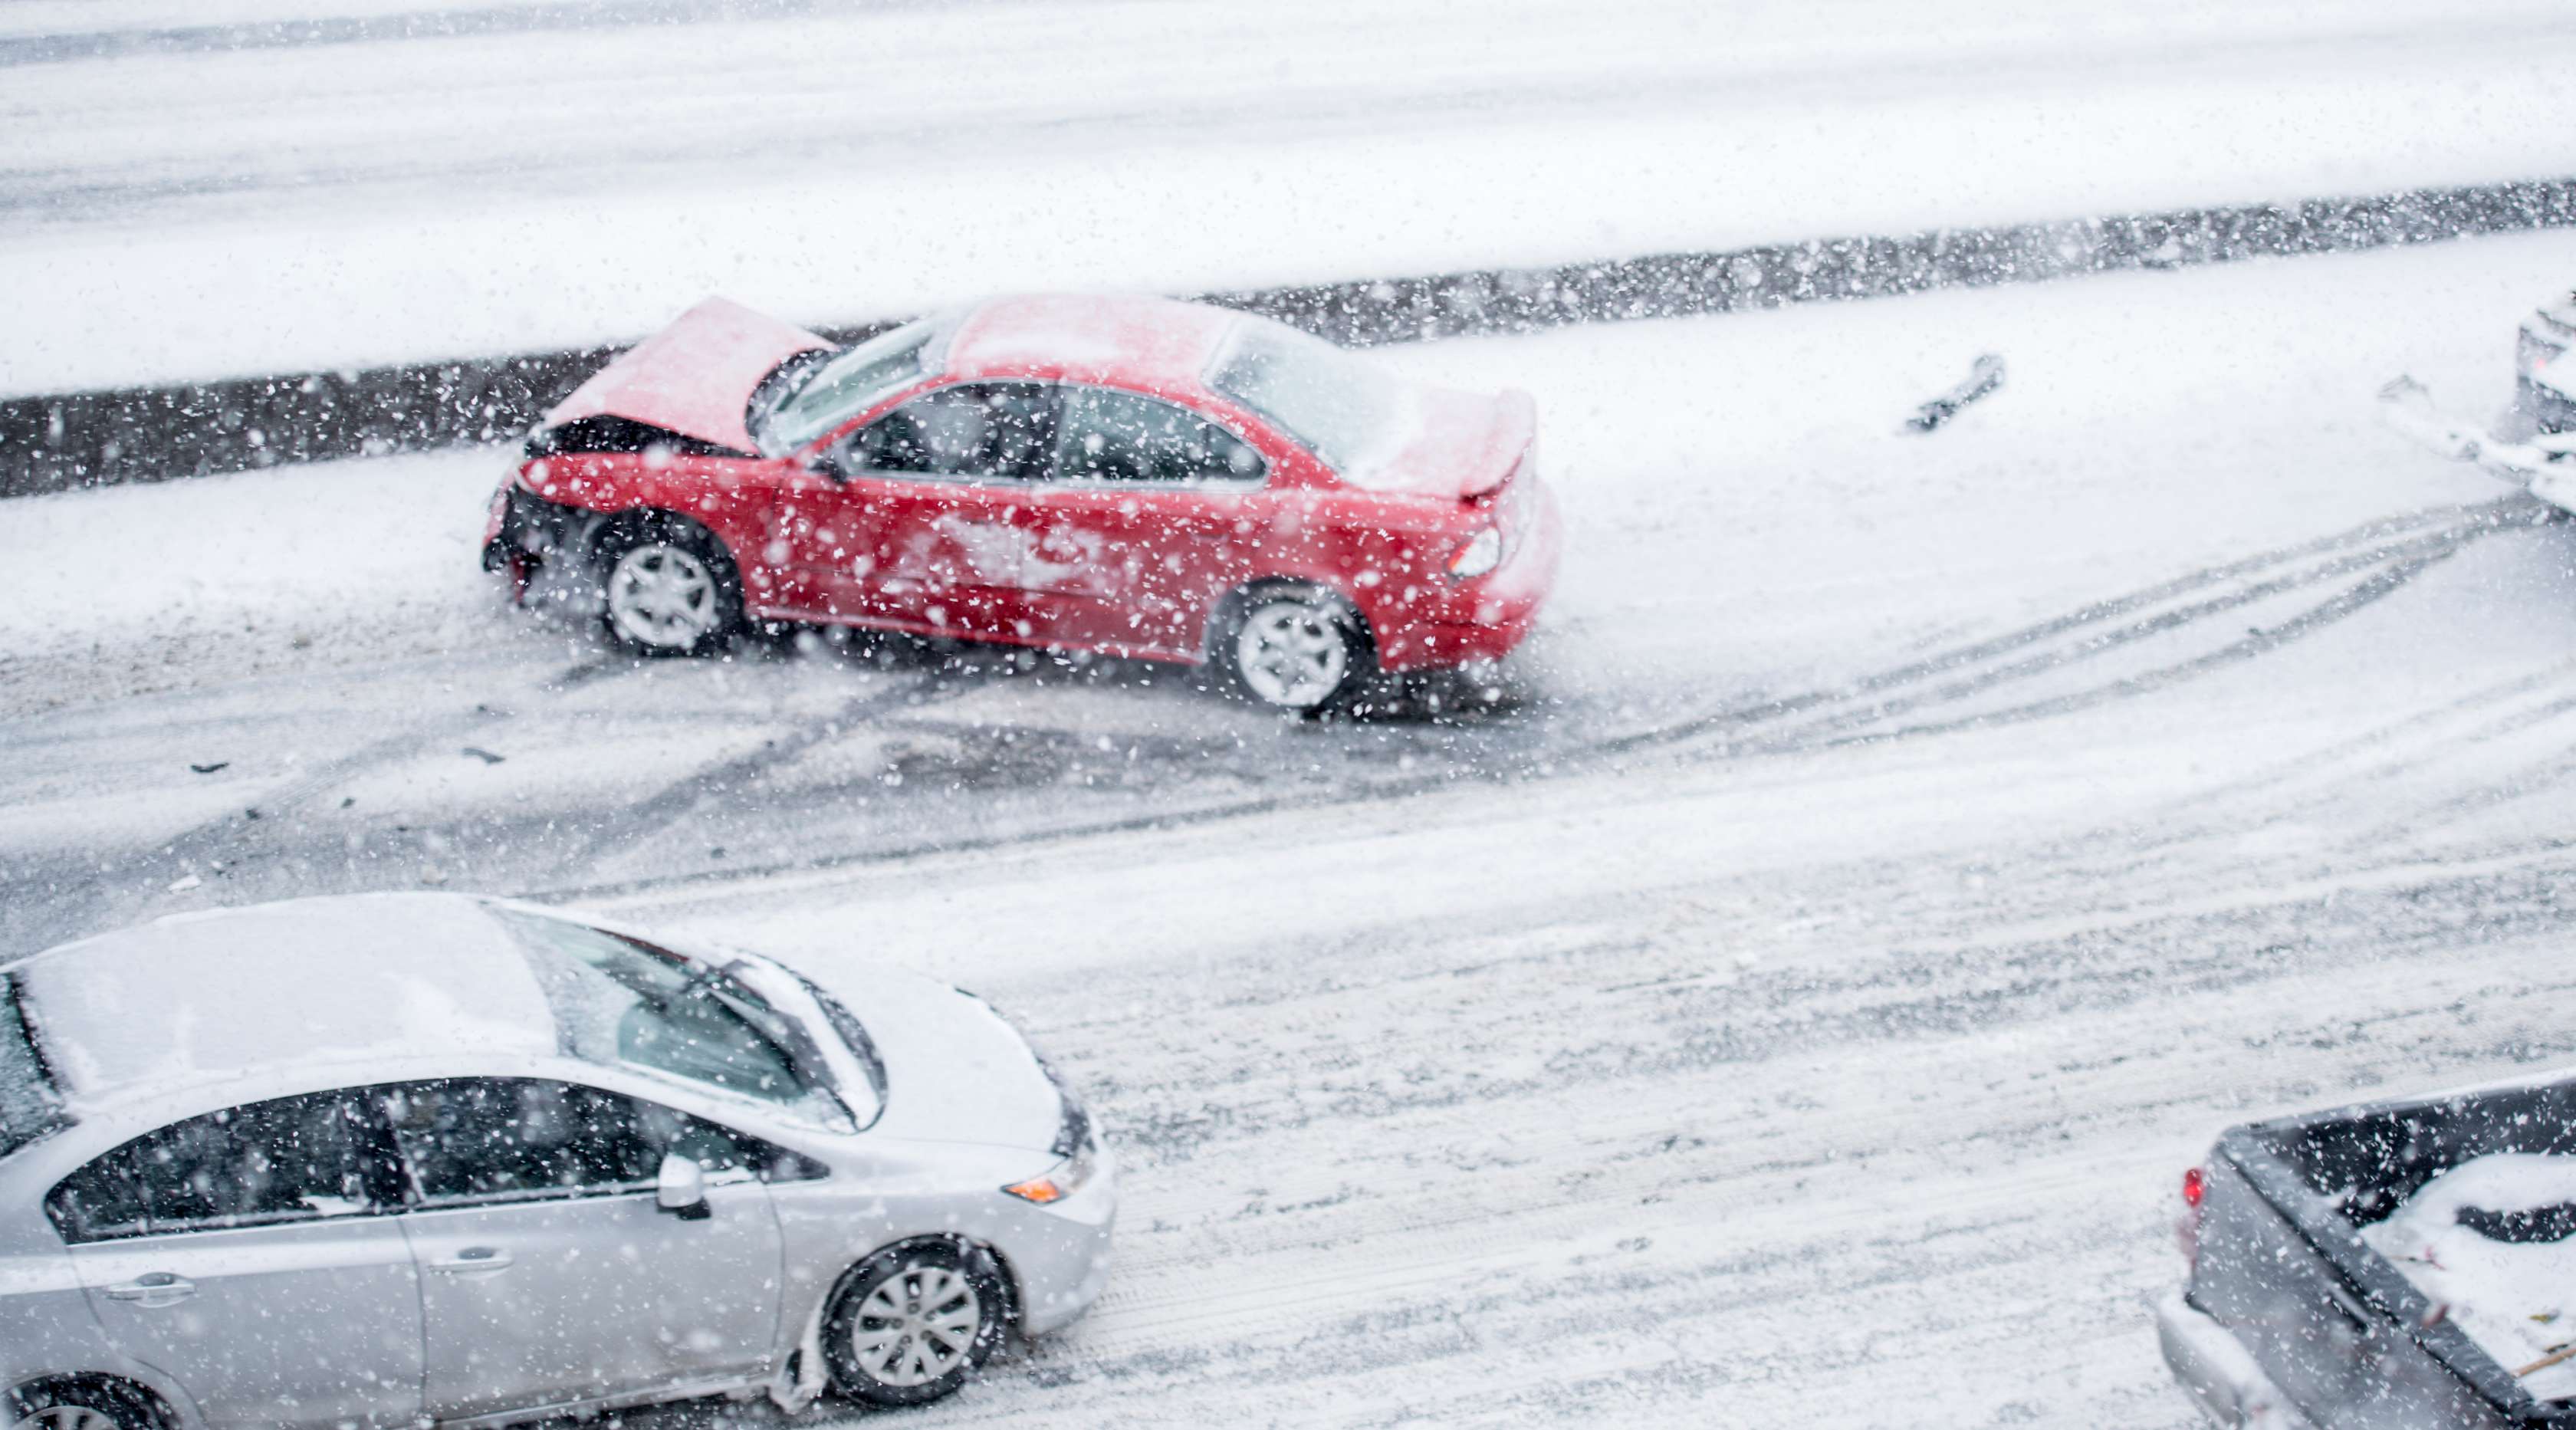 Allianz - Kfz-Versicherung Allwetterreifen: Roter und silberner Pkw stehen nach Autounfall beschädigt auf schneebedeckter Straße